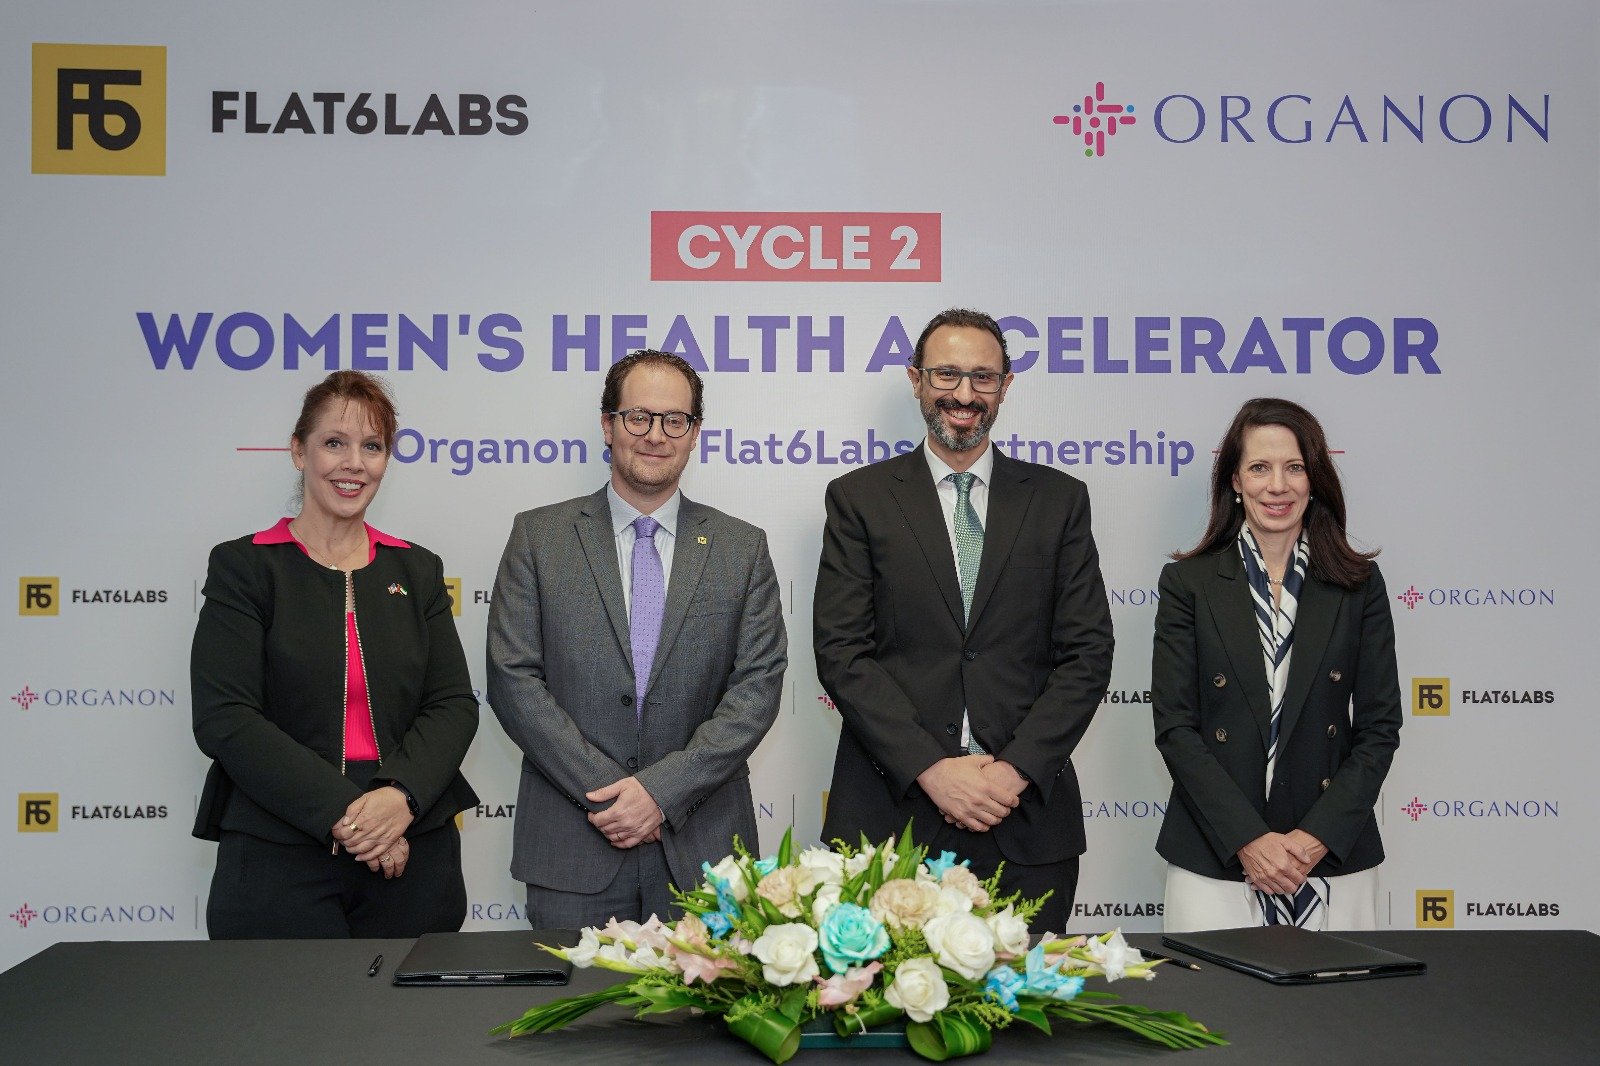 اورجانون وFlat6Labs تعلنان عن الدورة الثانية لبرنامج مسرعة أعمال الشركات الناشئة النسائية في الرعاية الصحية الرقمية بمنطقة الشرق الأوسط وشمال إفريقيا وتركيا